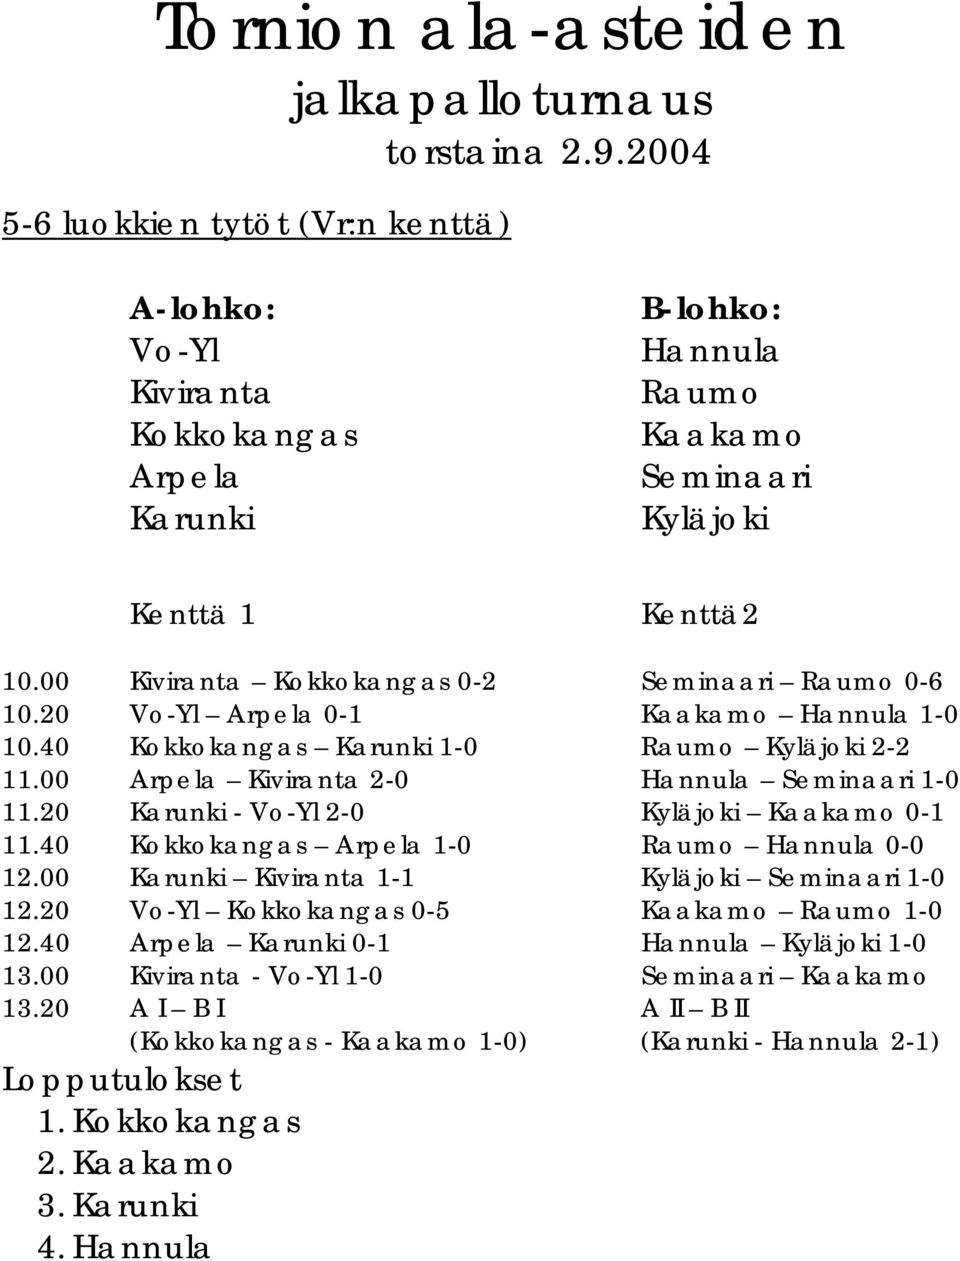 00 Kiviranta Kokkokangas 0-2 Seminaari Raumo 0-6 10.20 Vo-Yl Arpela 0-1 Kaakamo Hannula 1-0 10.40 Kokkokangas Karunki 1-0 Raumo Kyläjoki 2-2 11.00 Arpela Kiviranta 2-0 Hannula Seminaari 1-0 11.